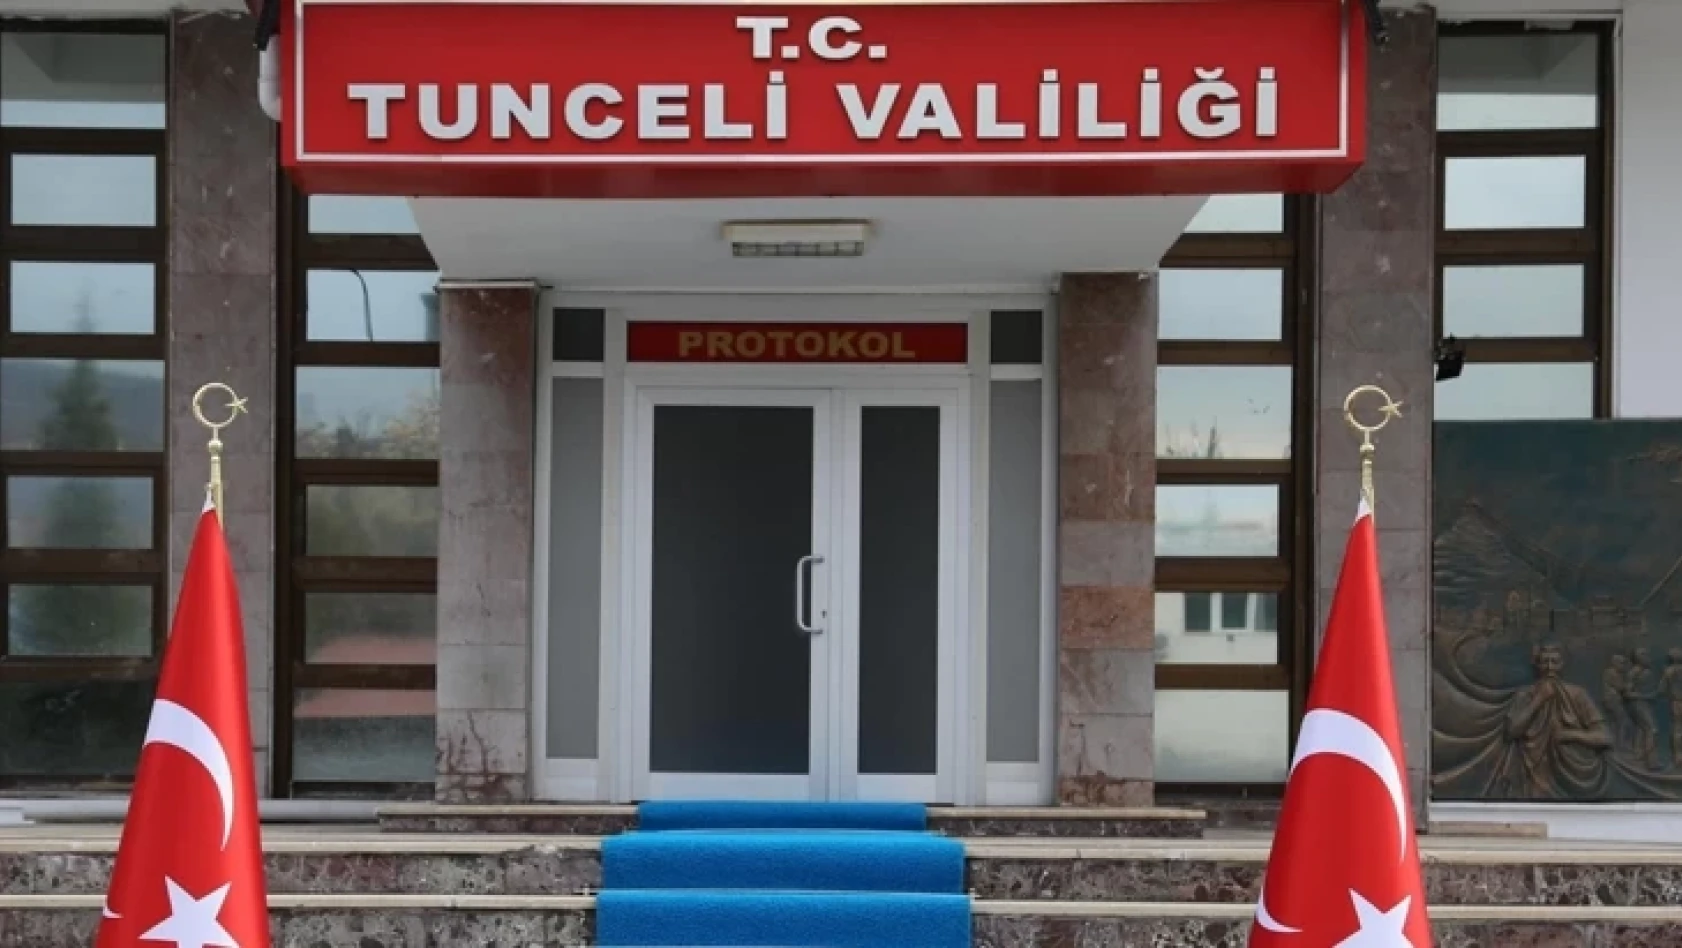 Tunceli'de Etkinliklere 15 Gün Süreyle Pandemi Kısıtlaması